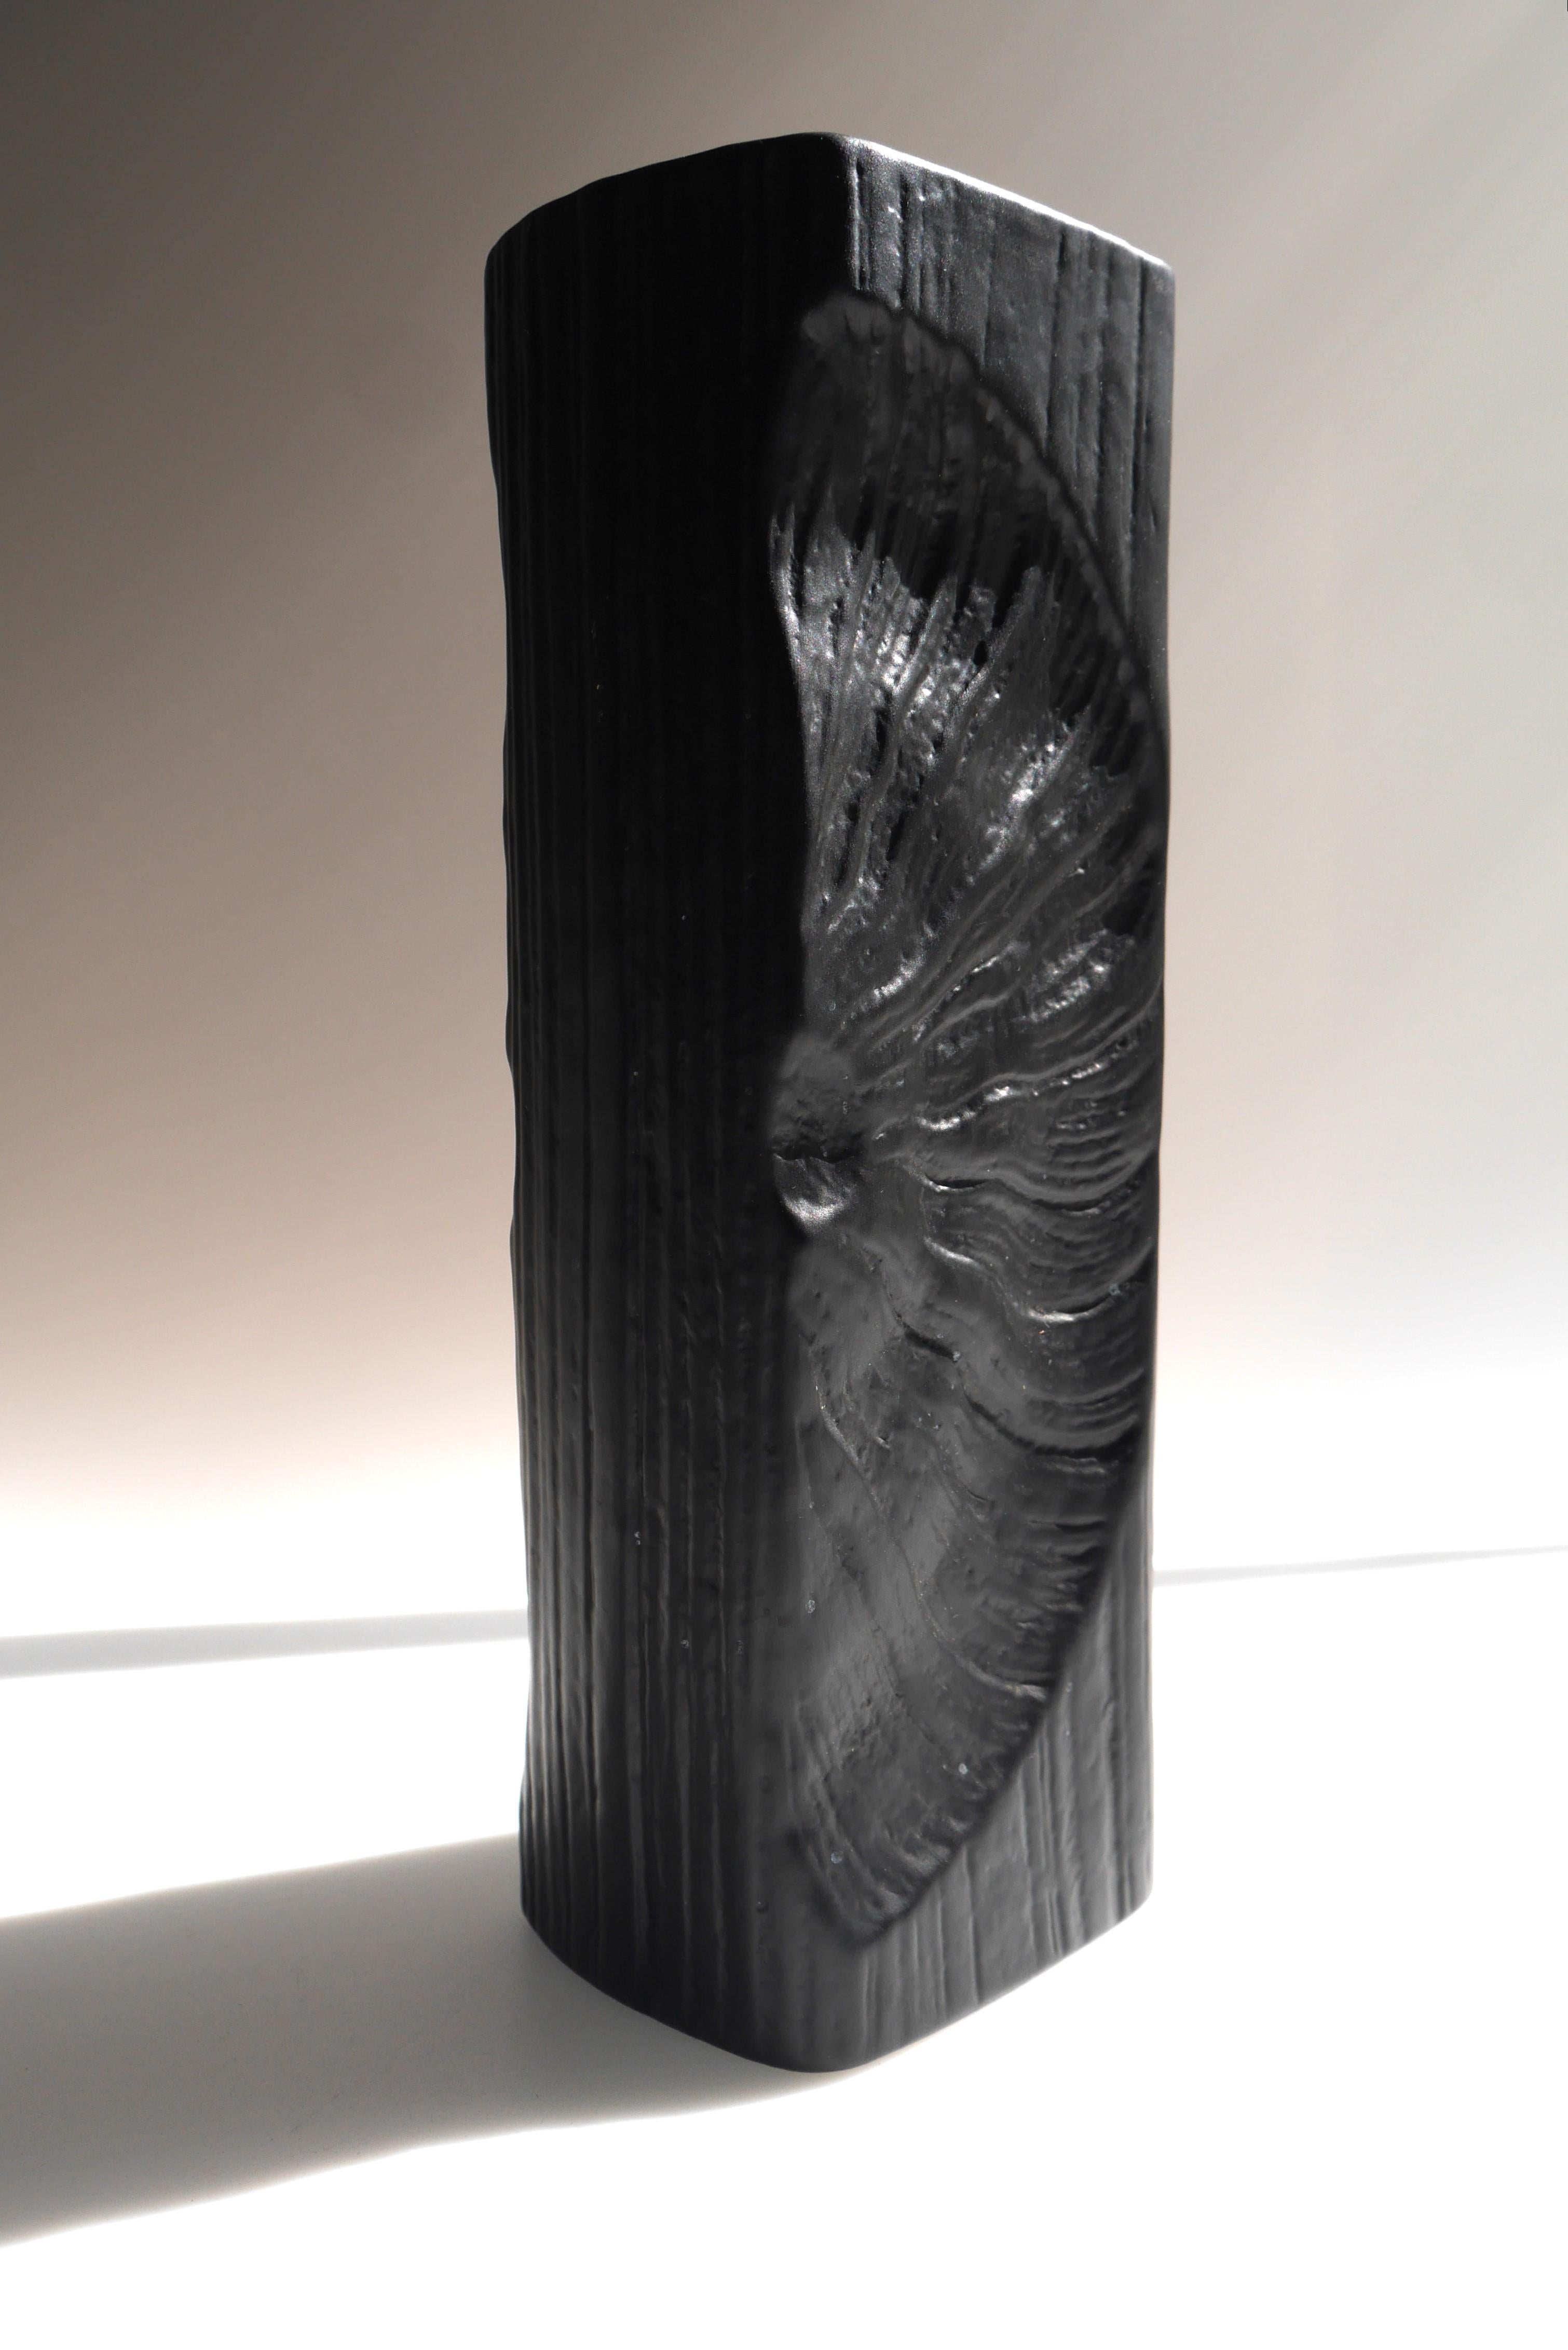 German Op-Art Studio line Bisque porcelain vase, by Martin Freyer Studio Line Rosenthal For Sale